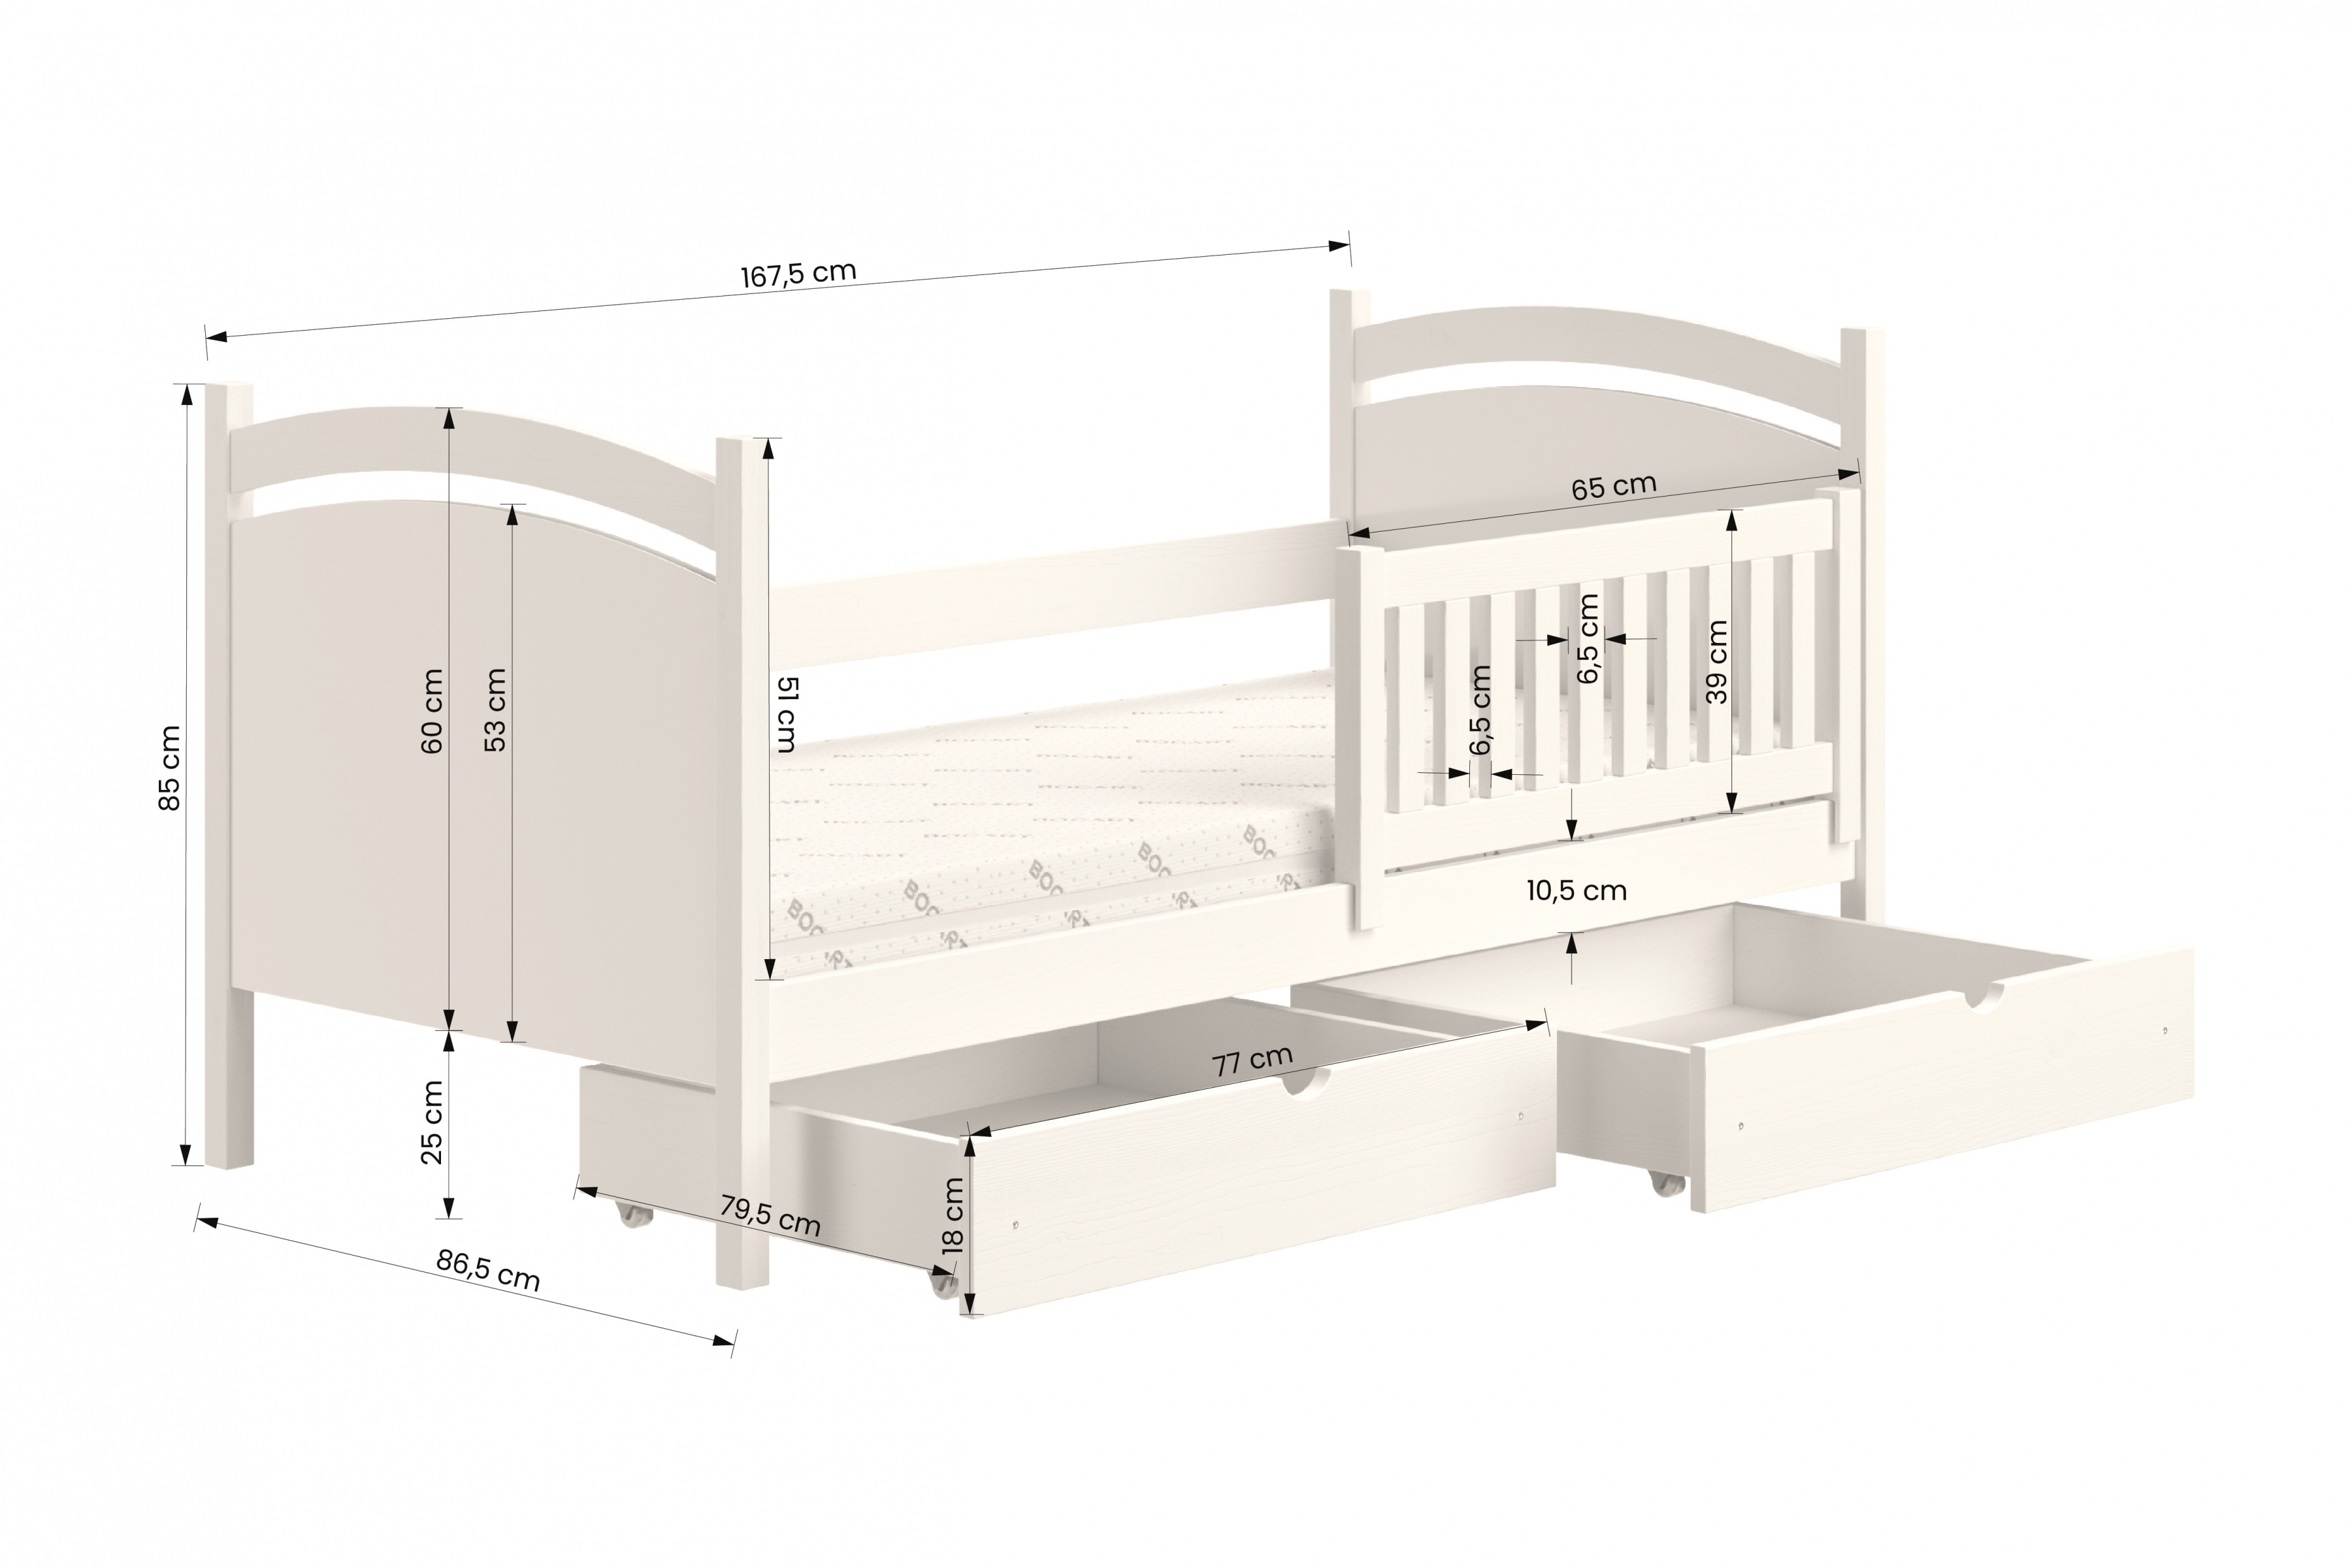  postel dětské s tabulí na suché mazání Amely - Barva Černý, rozměr 80x160 postel dzieciece z tablica suchoscieralna Amely - Rozměry